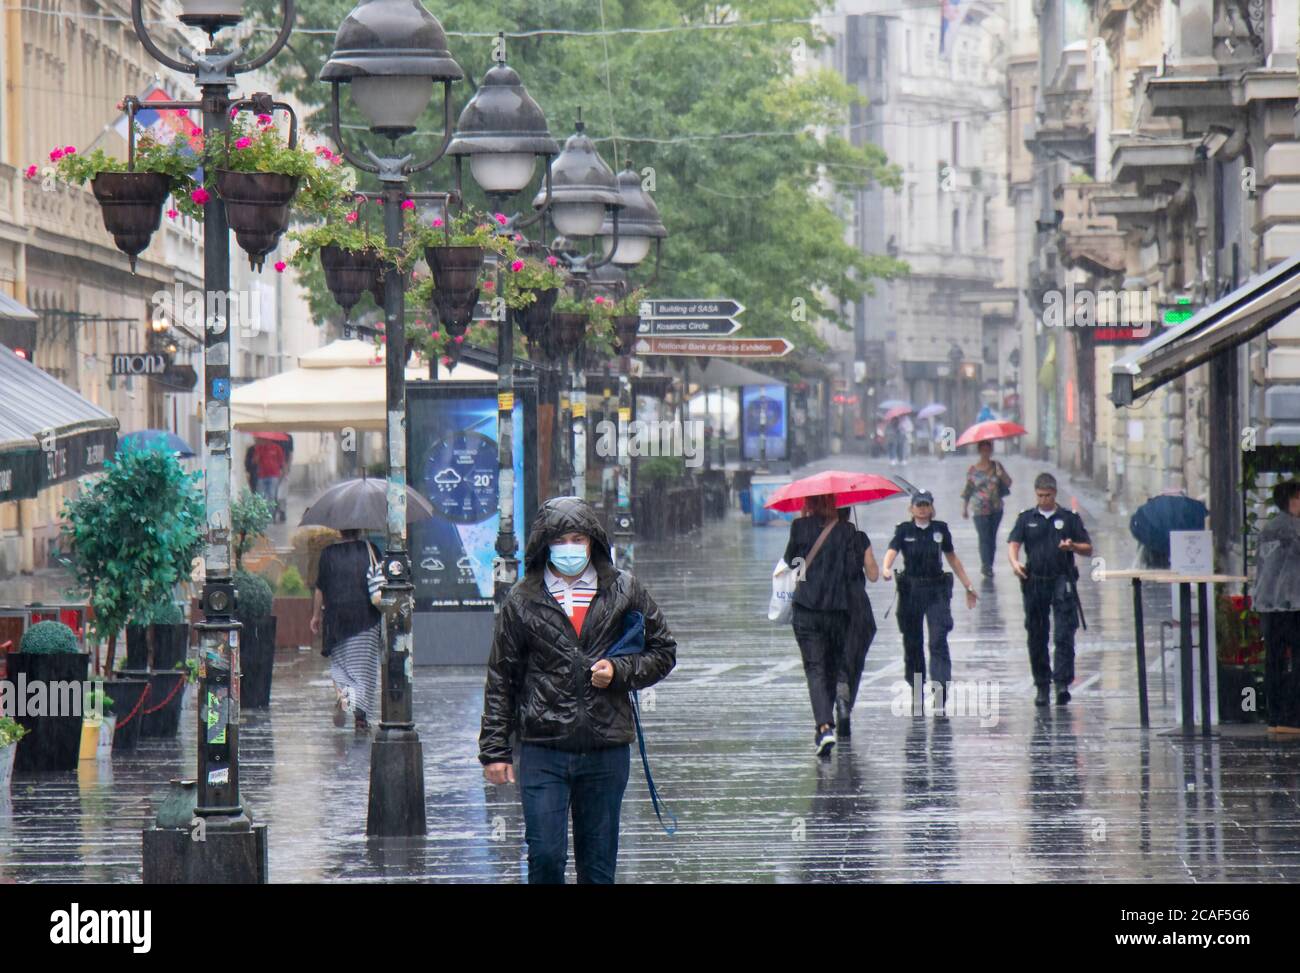 Belgrade, Serbie - 5 août 2020 : personnes marchant dans la rue piétonne Knez Mihailova lors d'une journée pluvieux d'été dans la ville Banque D'Images